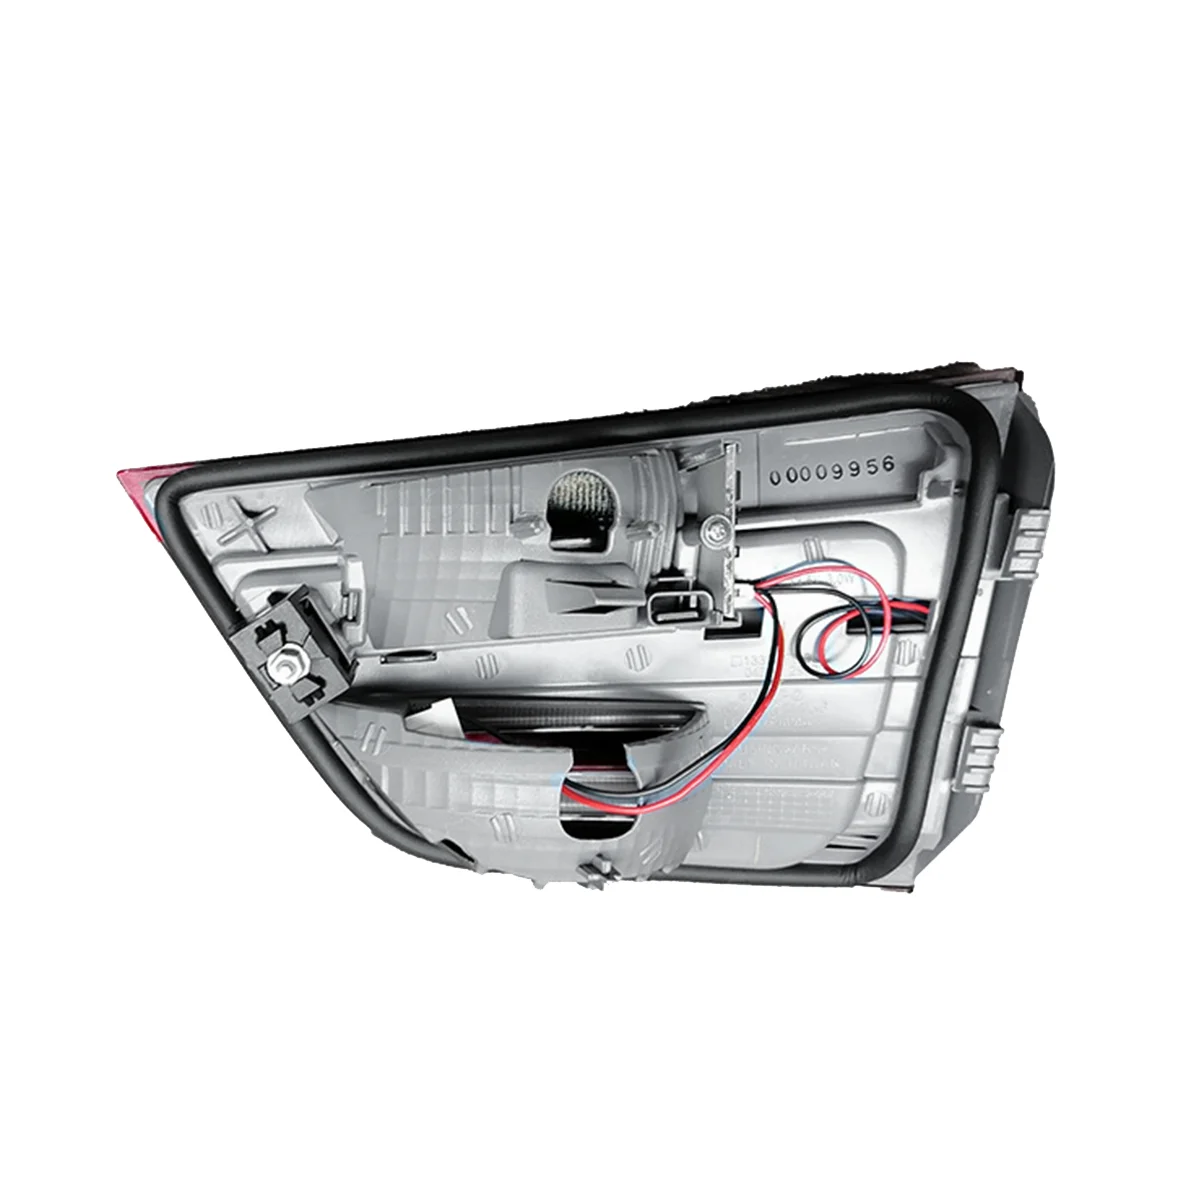 

63217217313 левая задняя фонарь, обшивка оболочки, Задний сигнал тормоза, фонарь для BMW X3 F25 2009-2017, задняя крышка